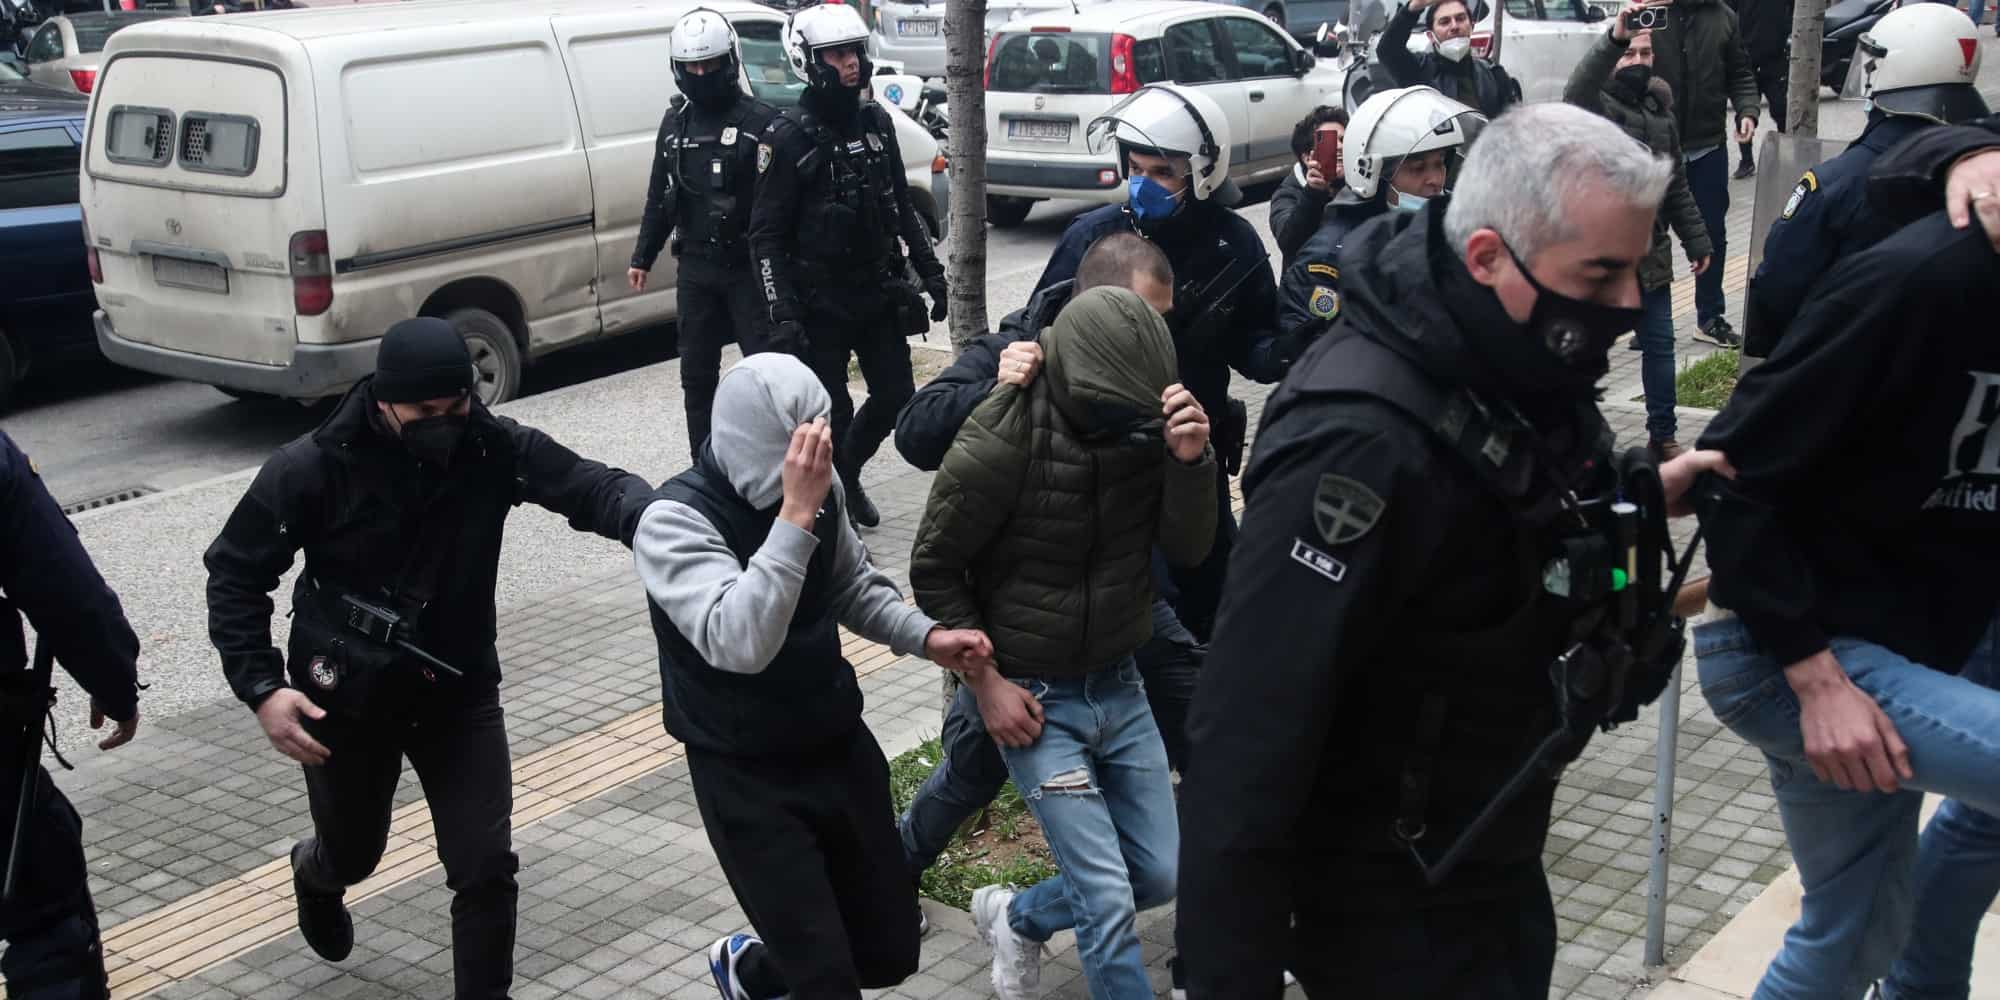 Οι συλληφθέντες για τη δολοφονία του 19χρονου Άλκη Καμπανού έφτασαν στο Δικαστικό Μέγαρο Θεσσαλονίκης